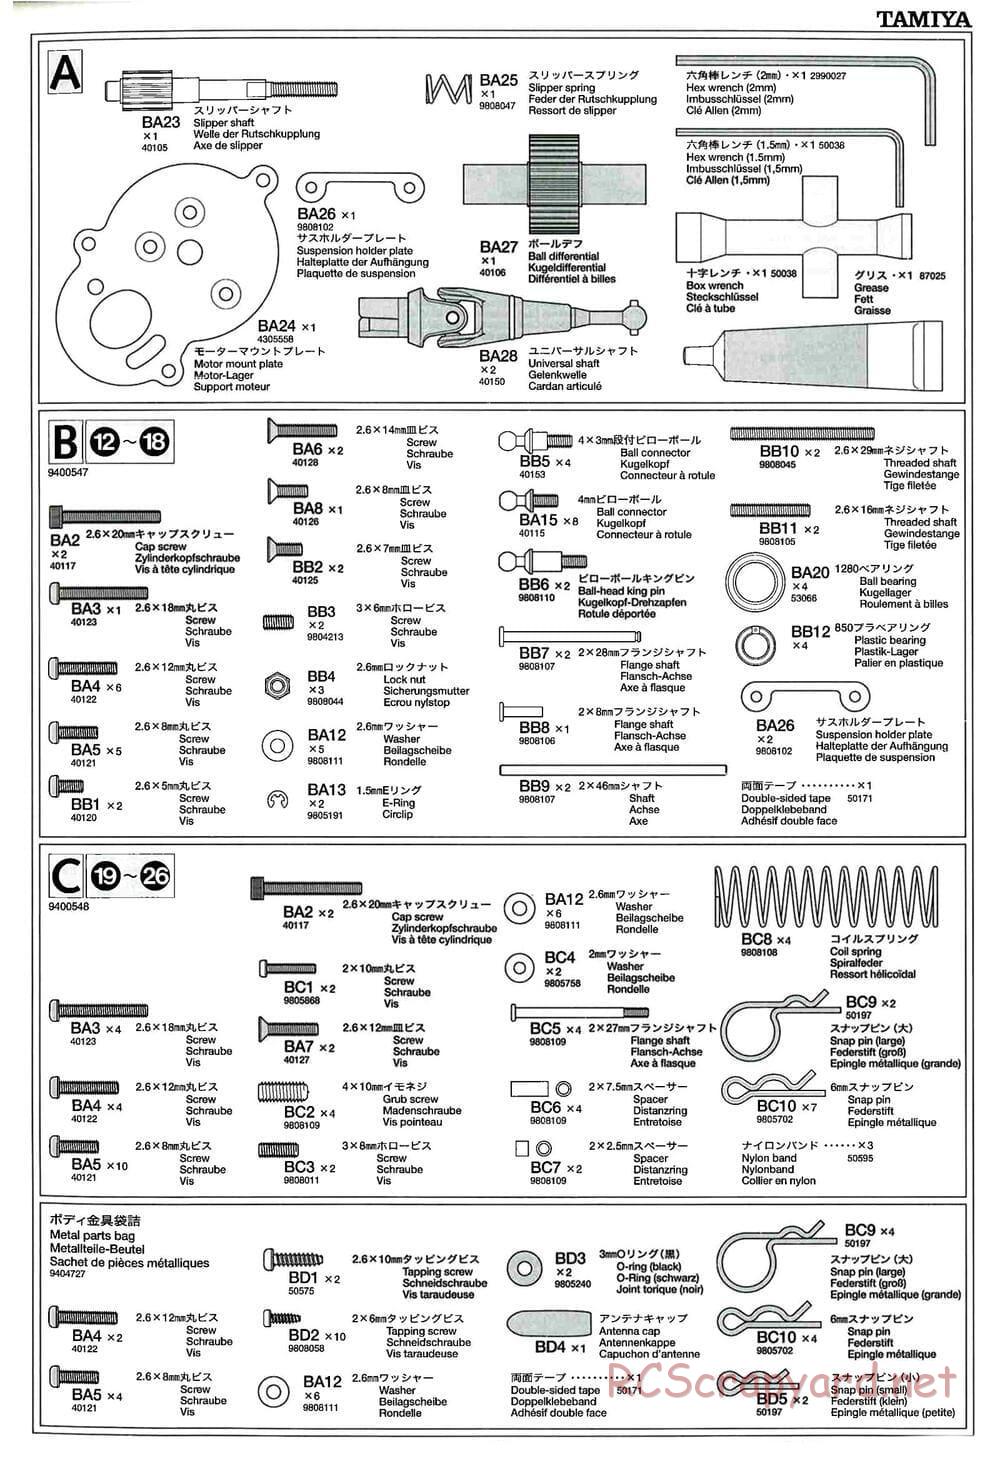 Tamiya - GT-01 Chassis - Manual - Page 22